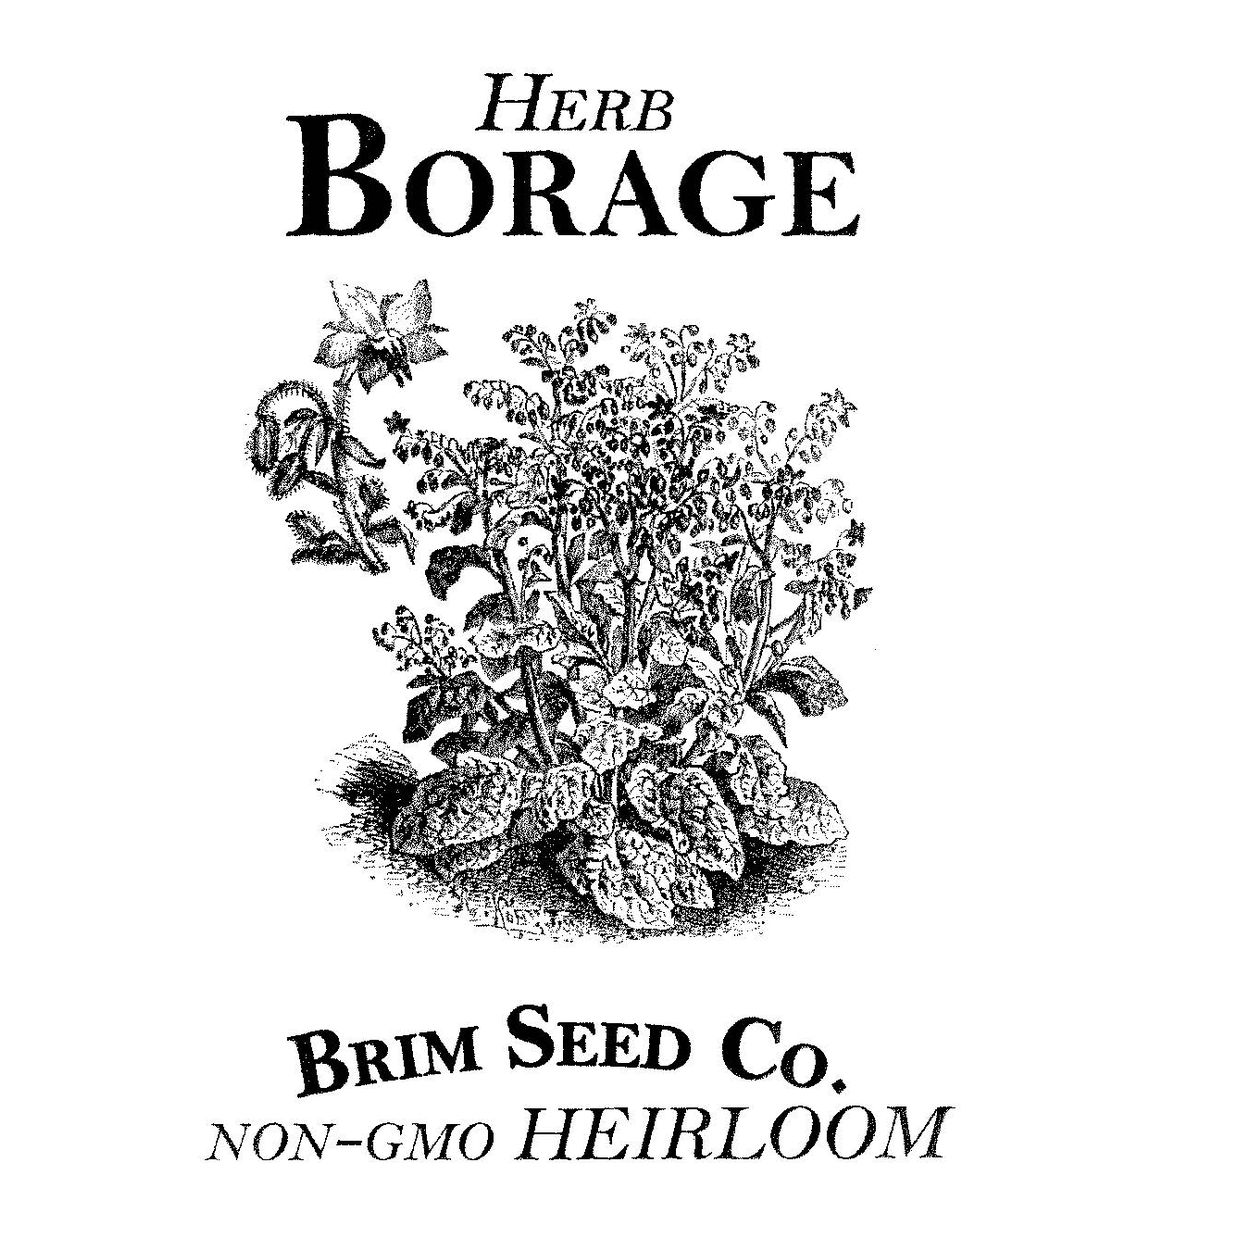 Brim Seed Co. - Borage Herb Heirloom Seed